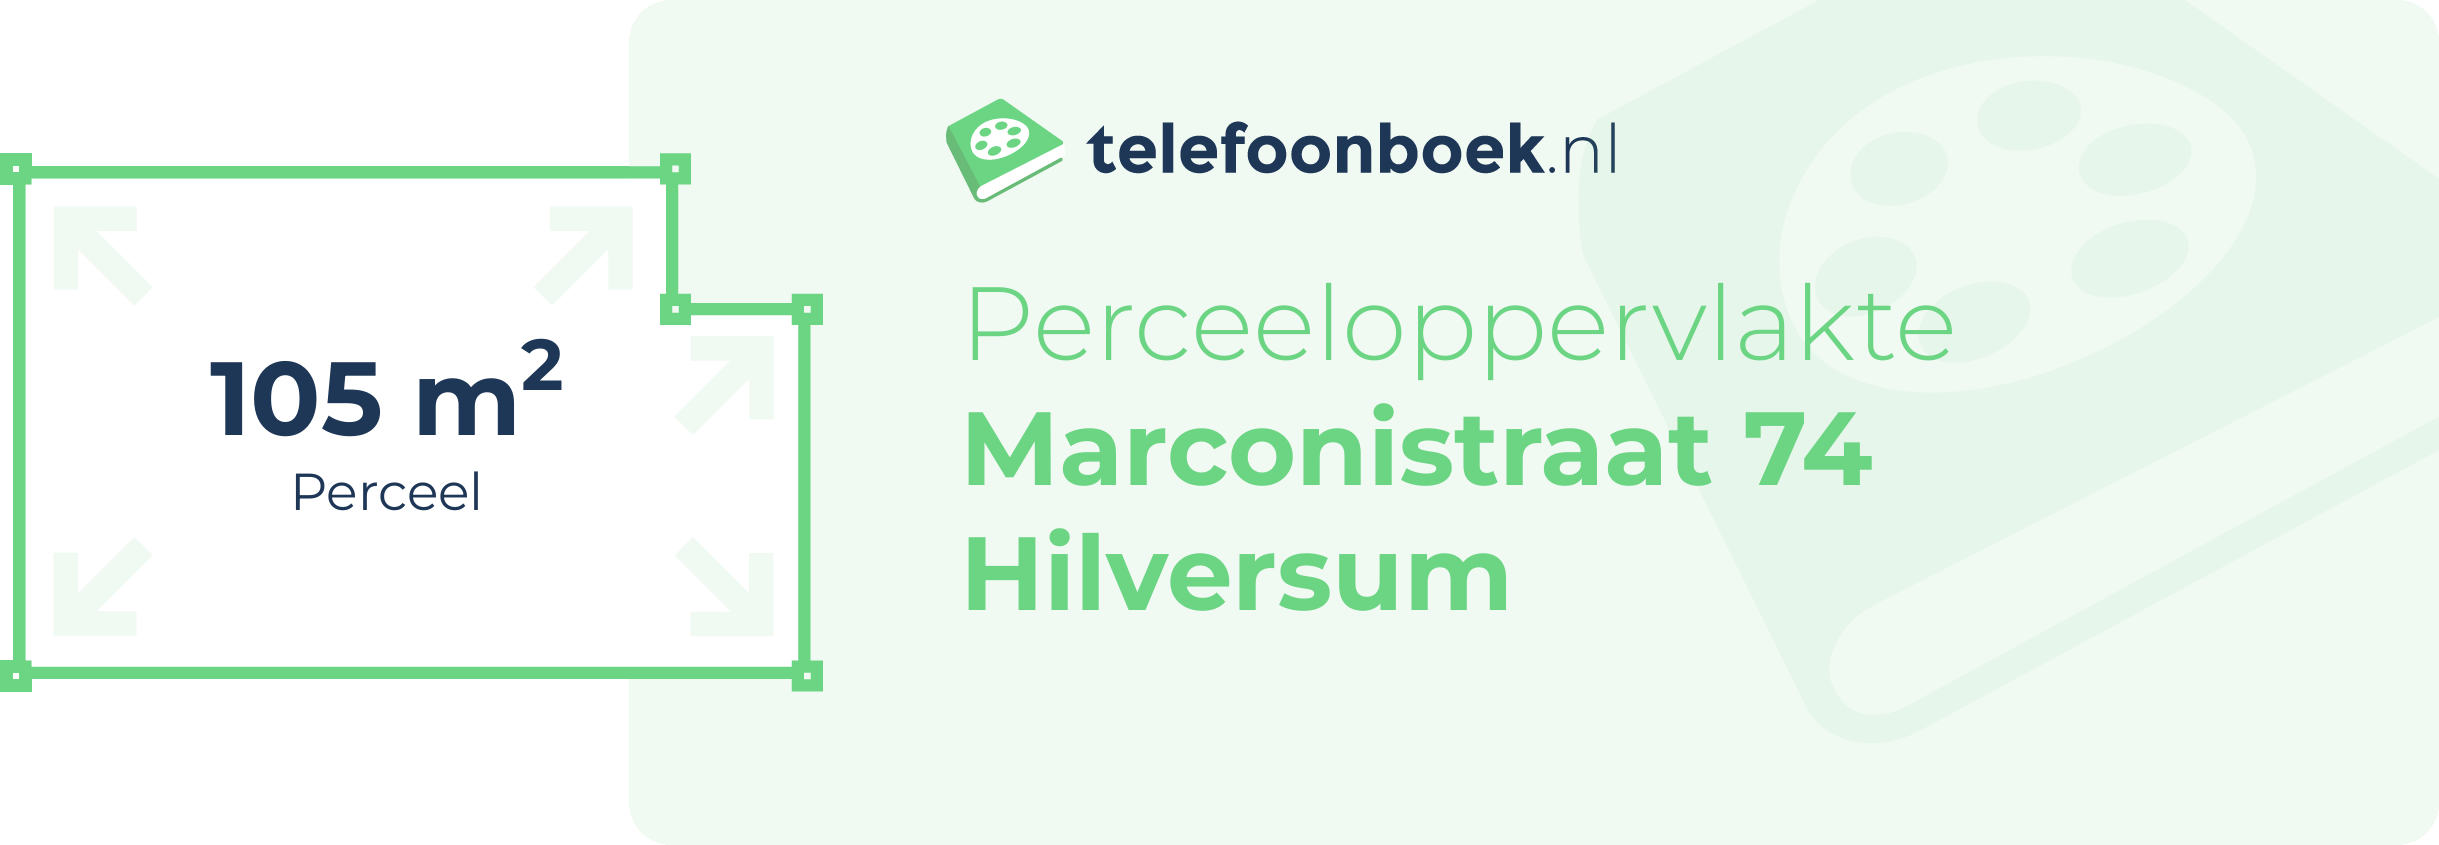 Perceeloppervlakte Marconistraat 74 Hilversum